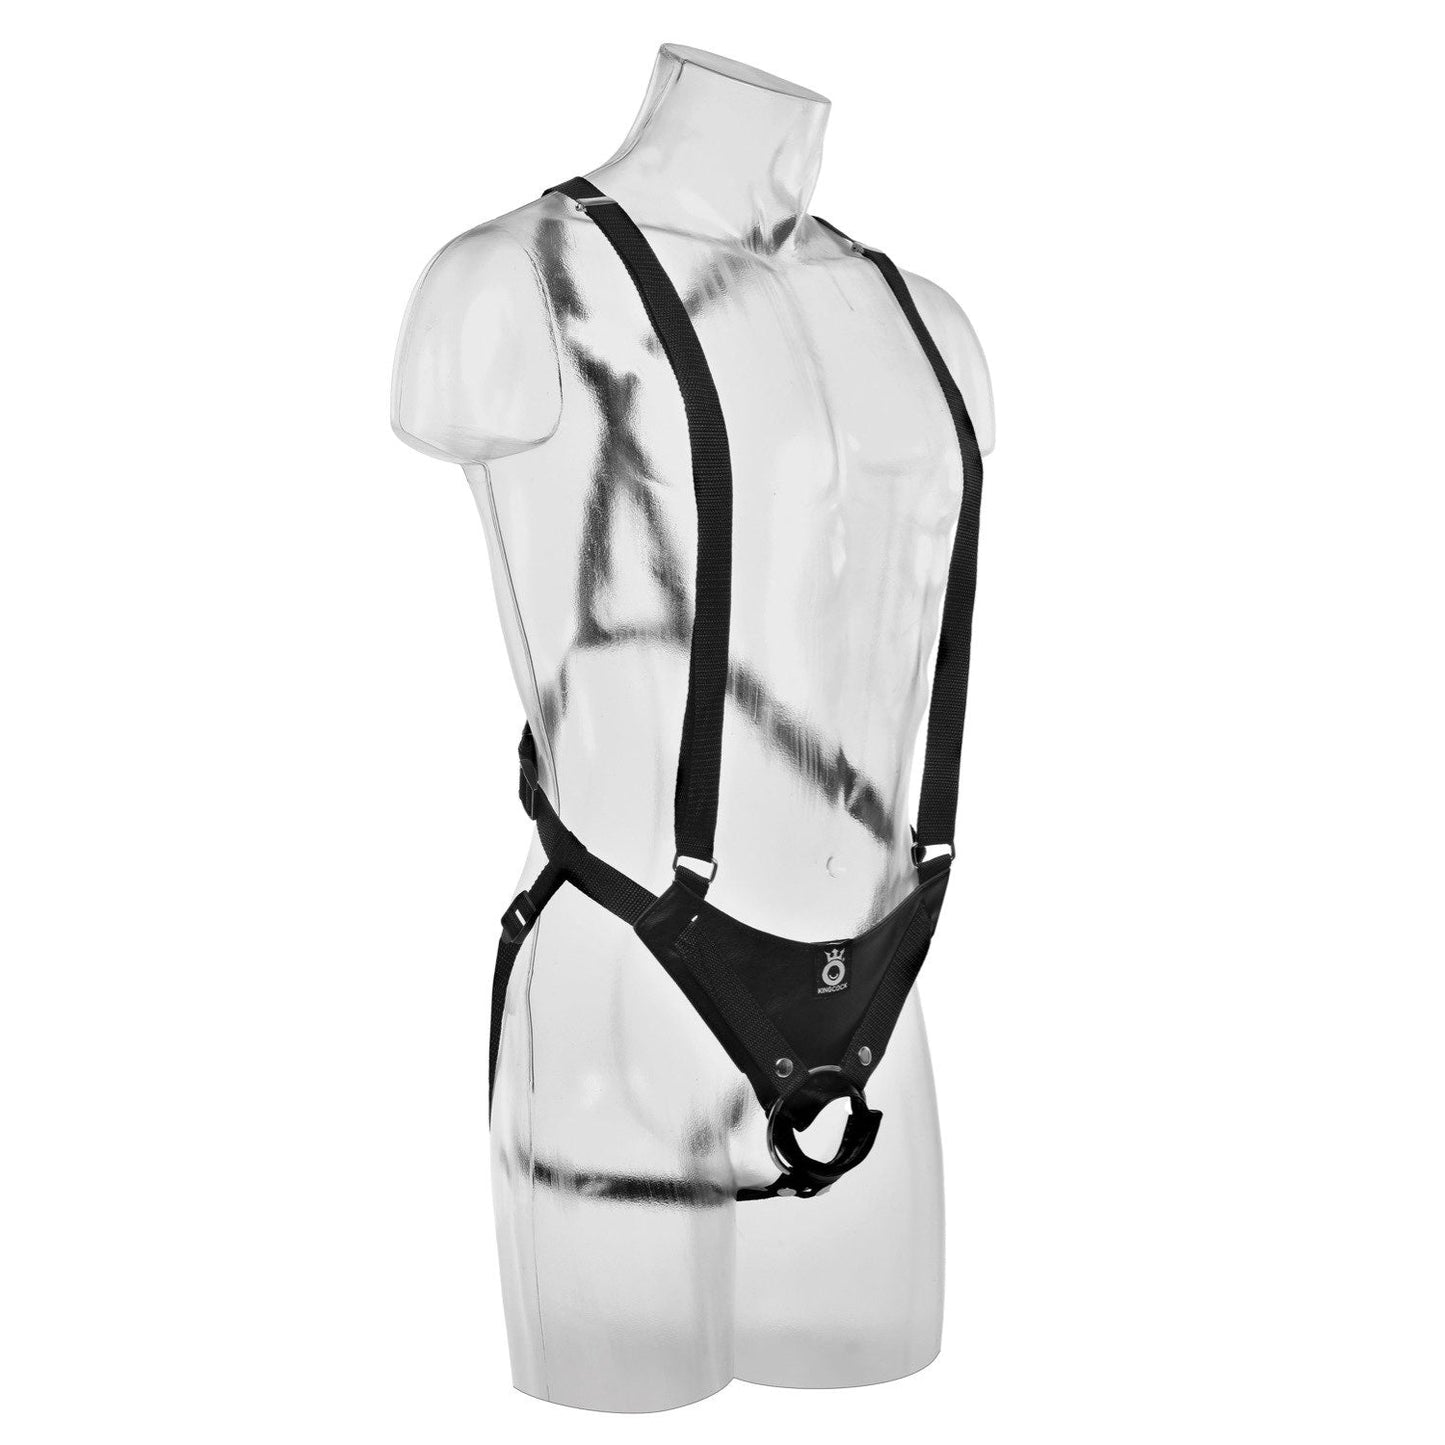 10 英寸空心绑带式吊带系统 - 肉色 25.4 厘米空心绑带式带吊带